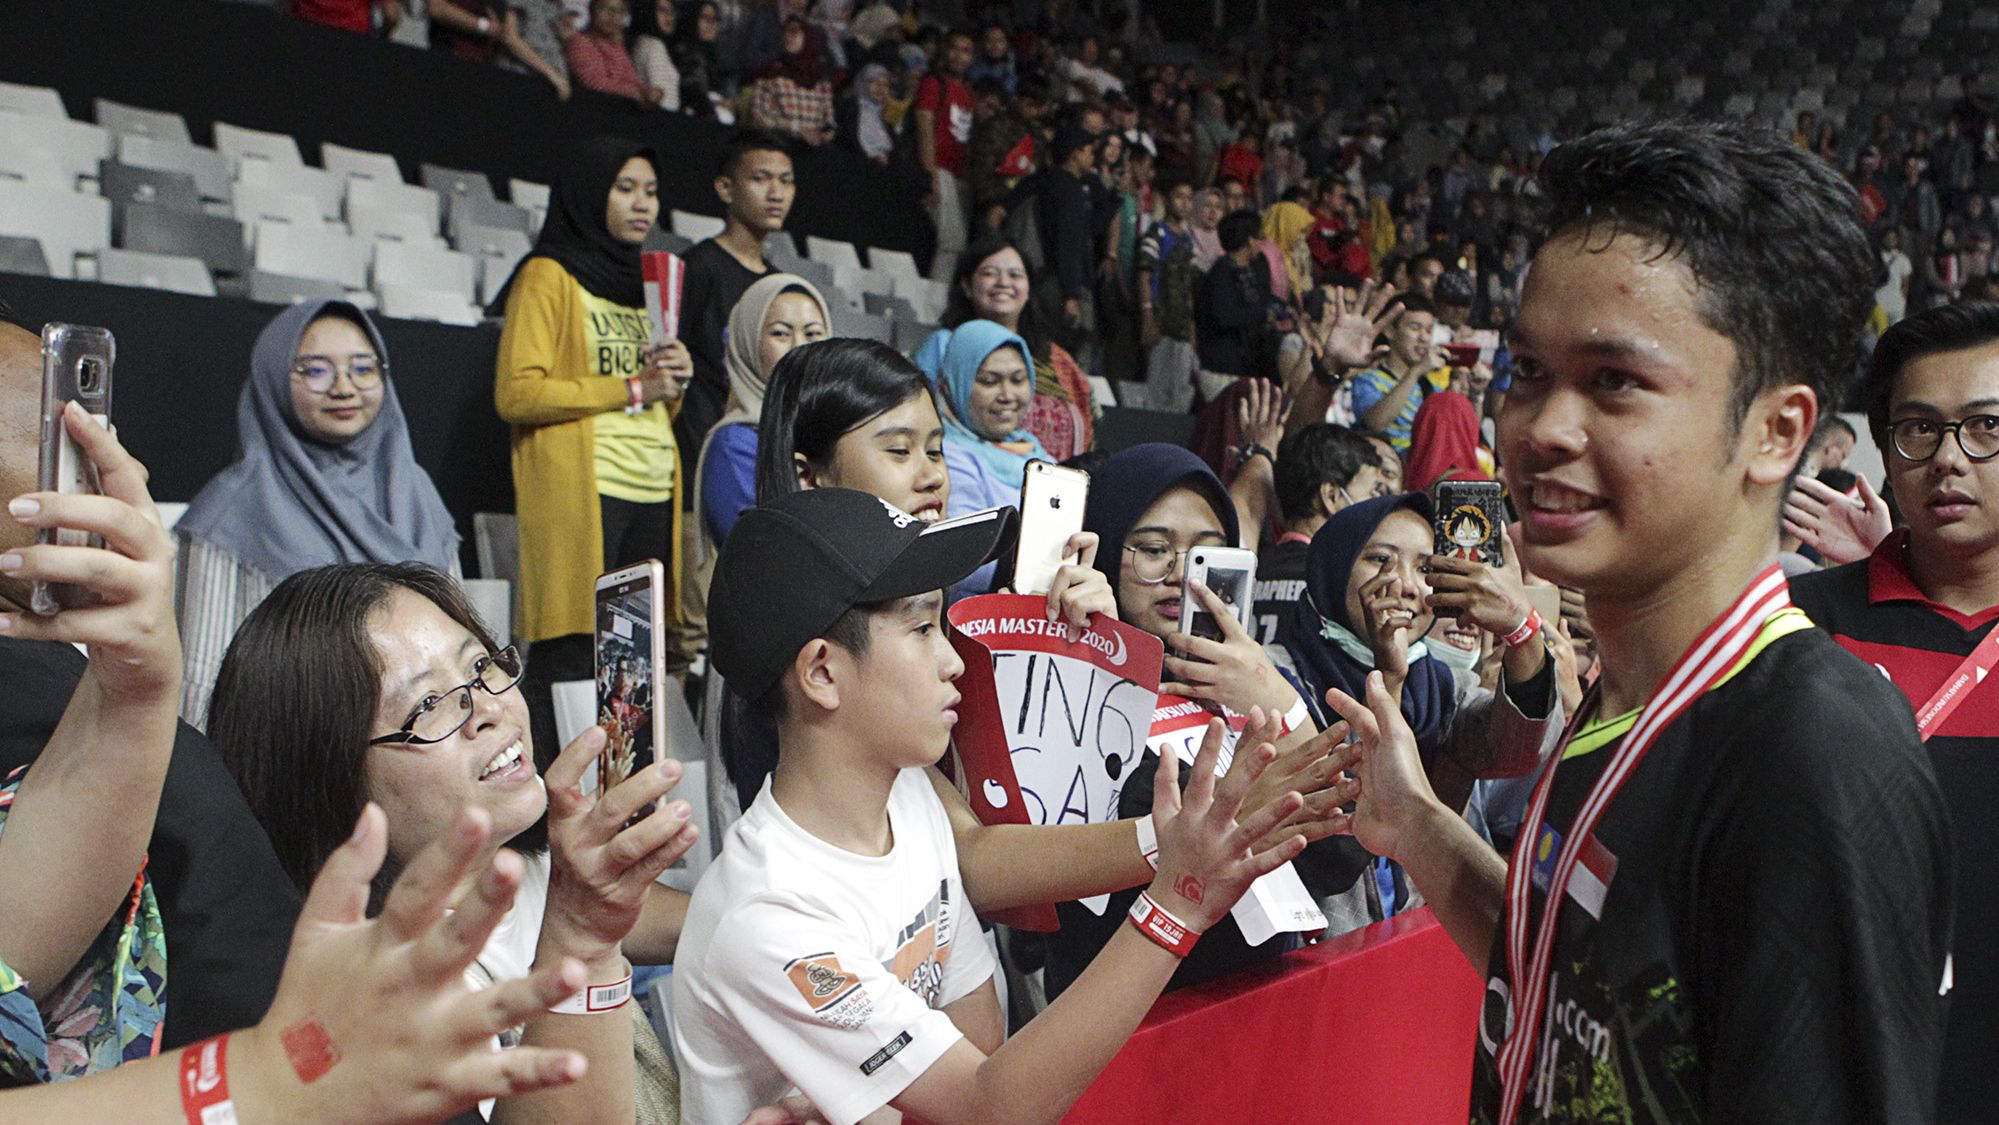 Anthony Sinisuka Ginting bersama para fans, pada laga final Indonesia Masters 2020 yang digelar di Istora Senayan, Jakarta, pada Jumat (19/1/2020)